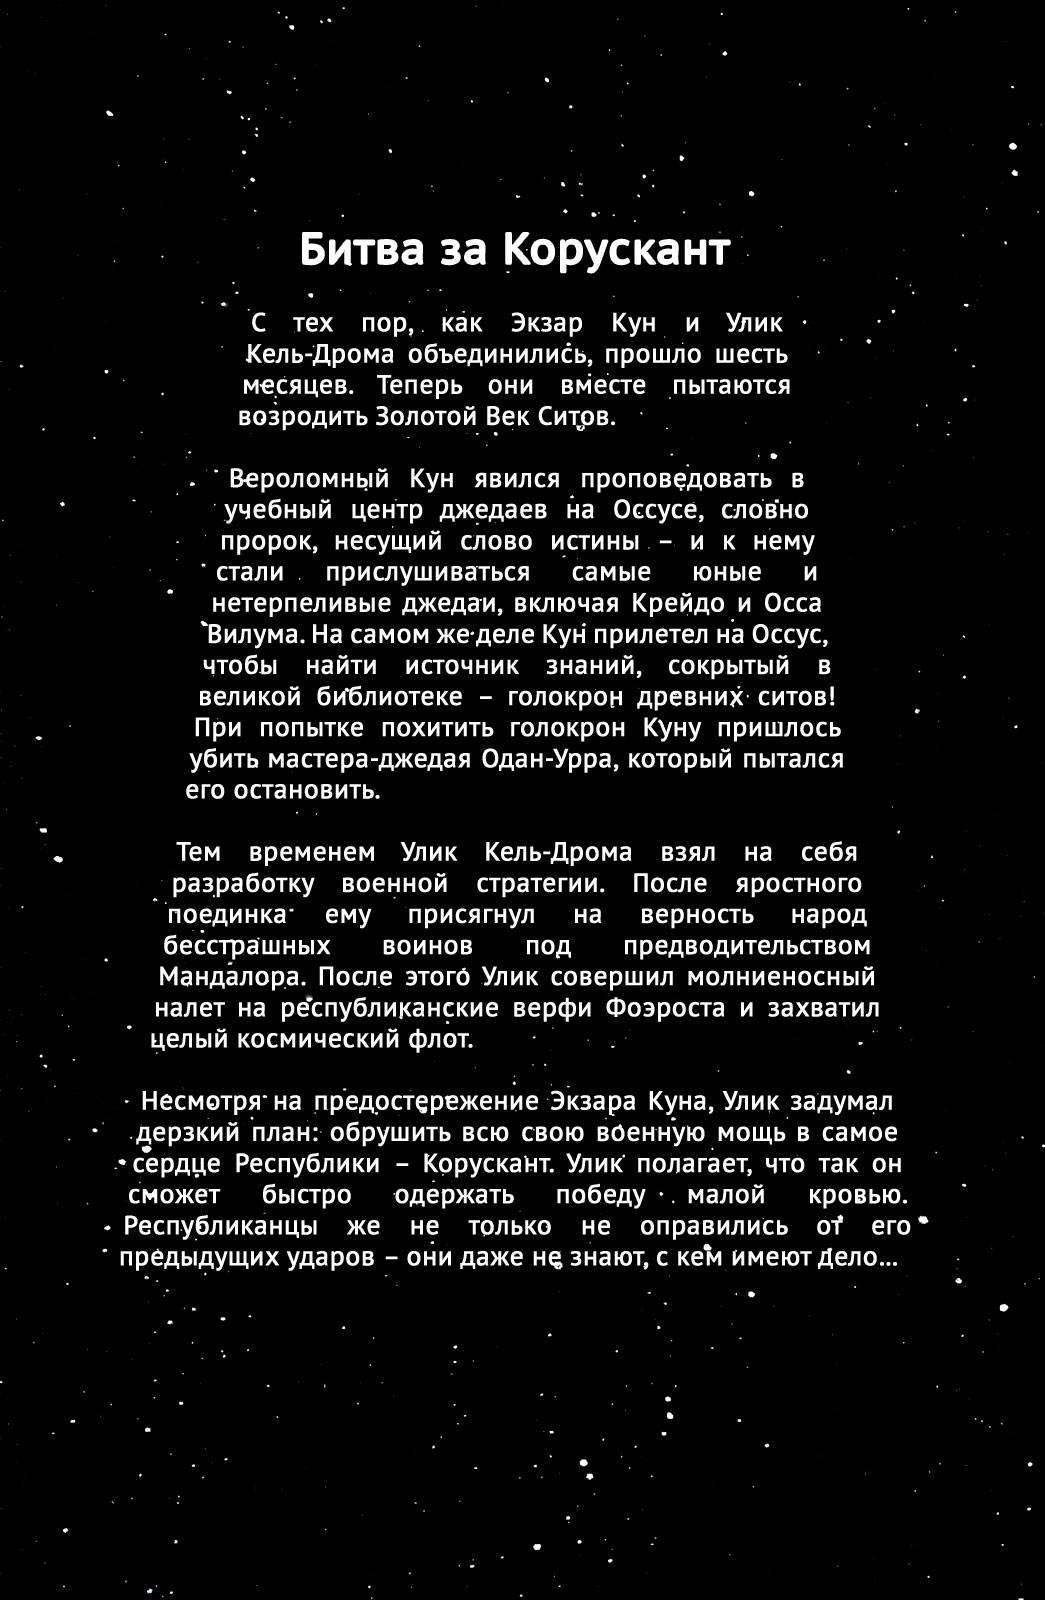 Звездные Войны: Сказания о Джедаях: Война Ситов №2 онлайн